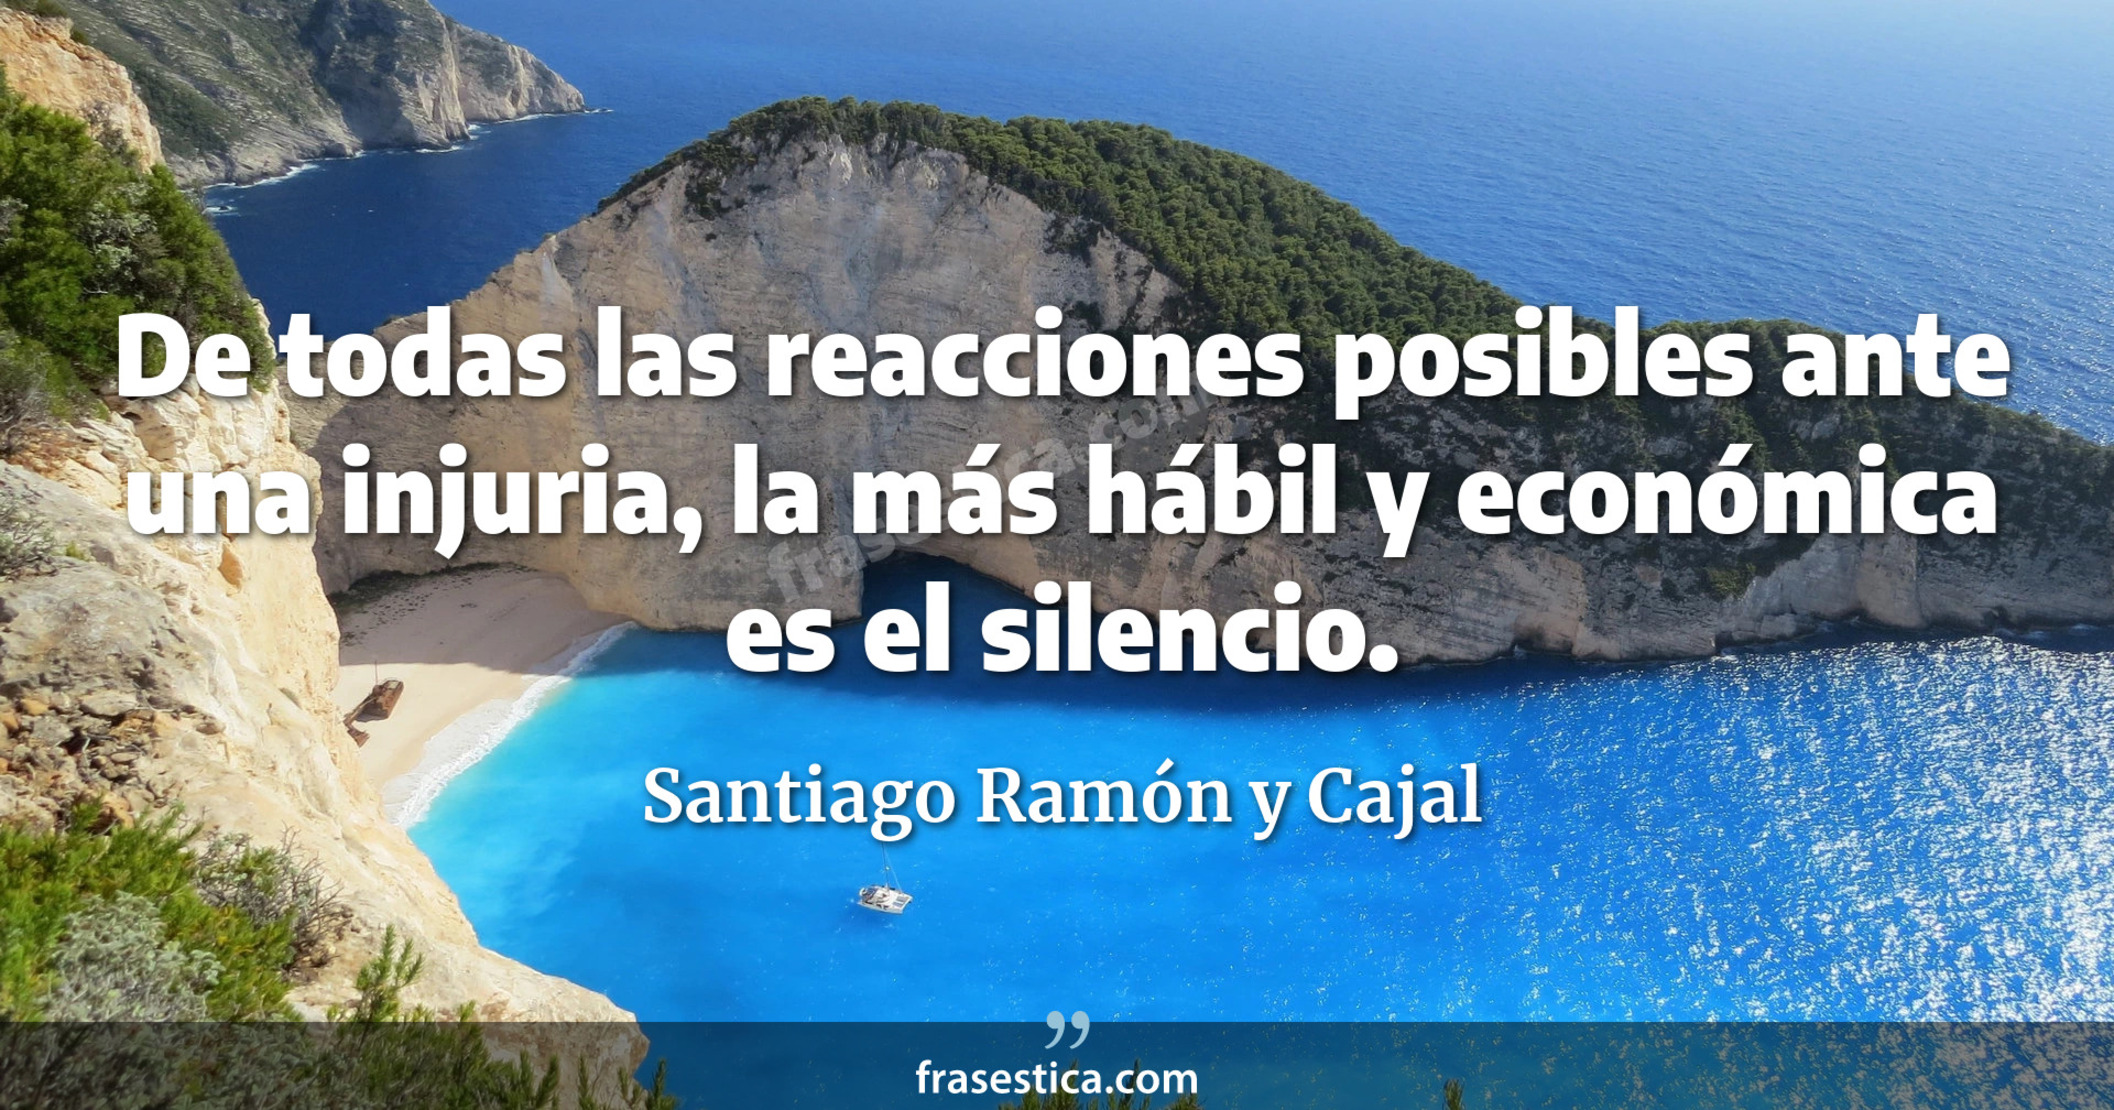 De todas las reacciones posibles ante una injuria, la más hábil y económica es el silencio. - Santiago Ramón y Cajal